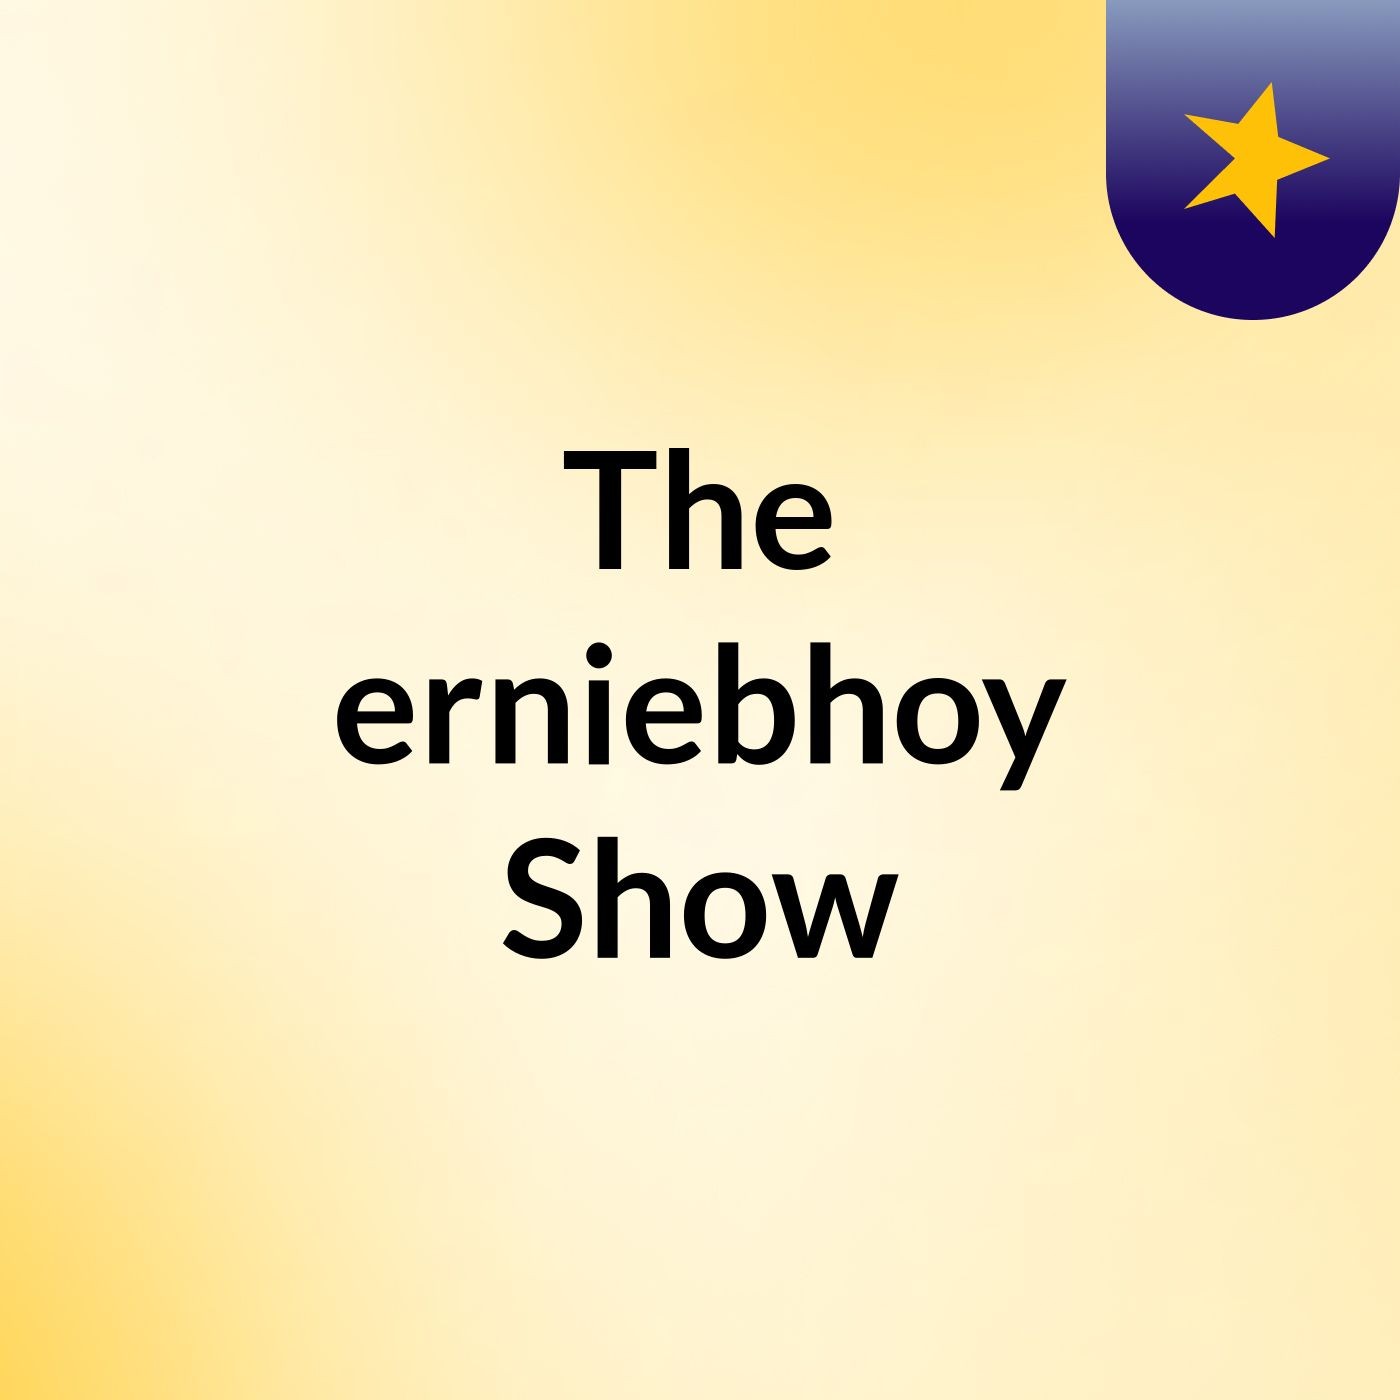 The erniebhoy Show